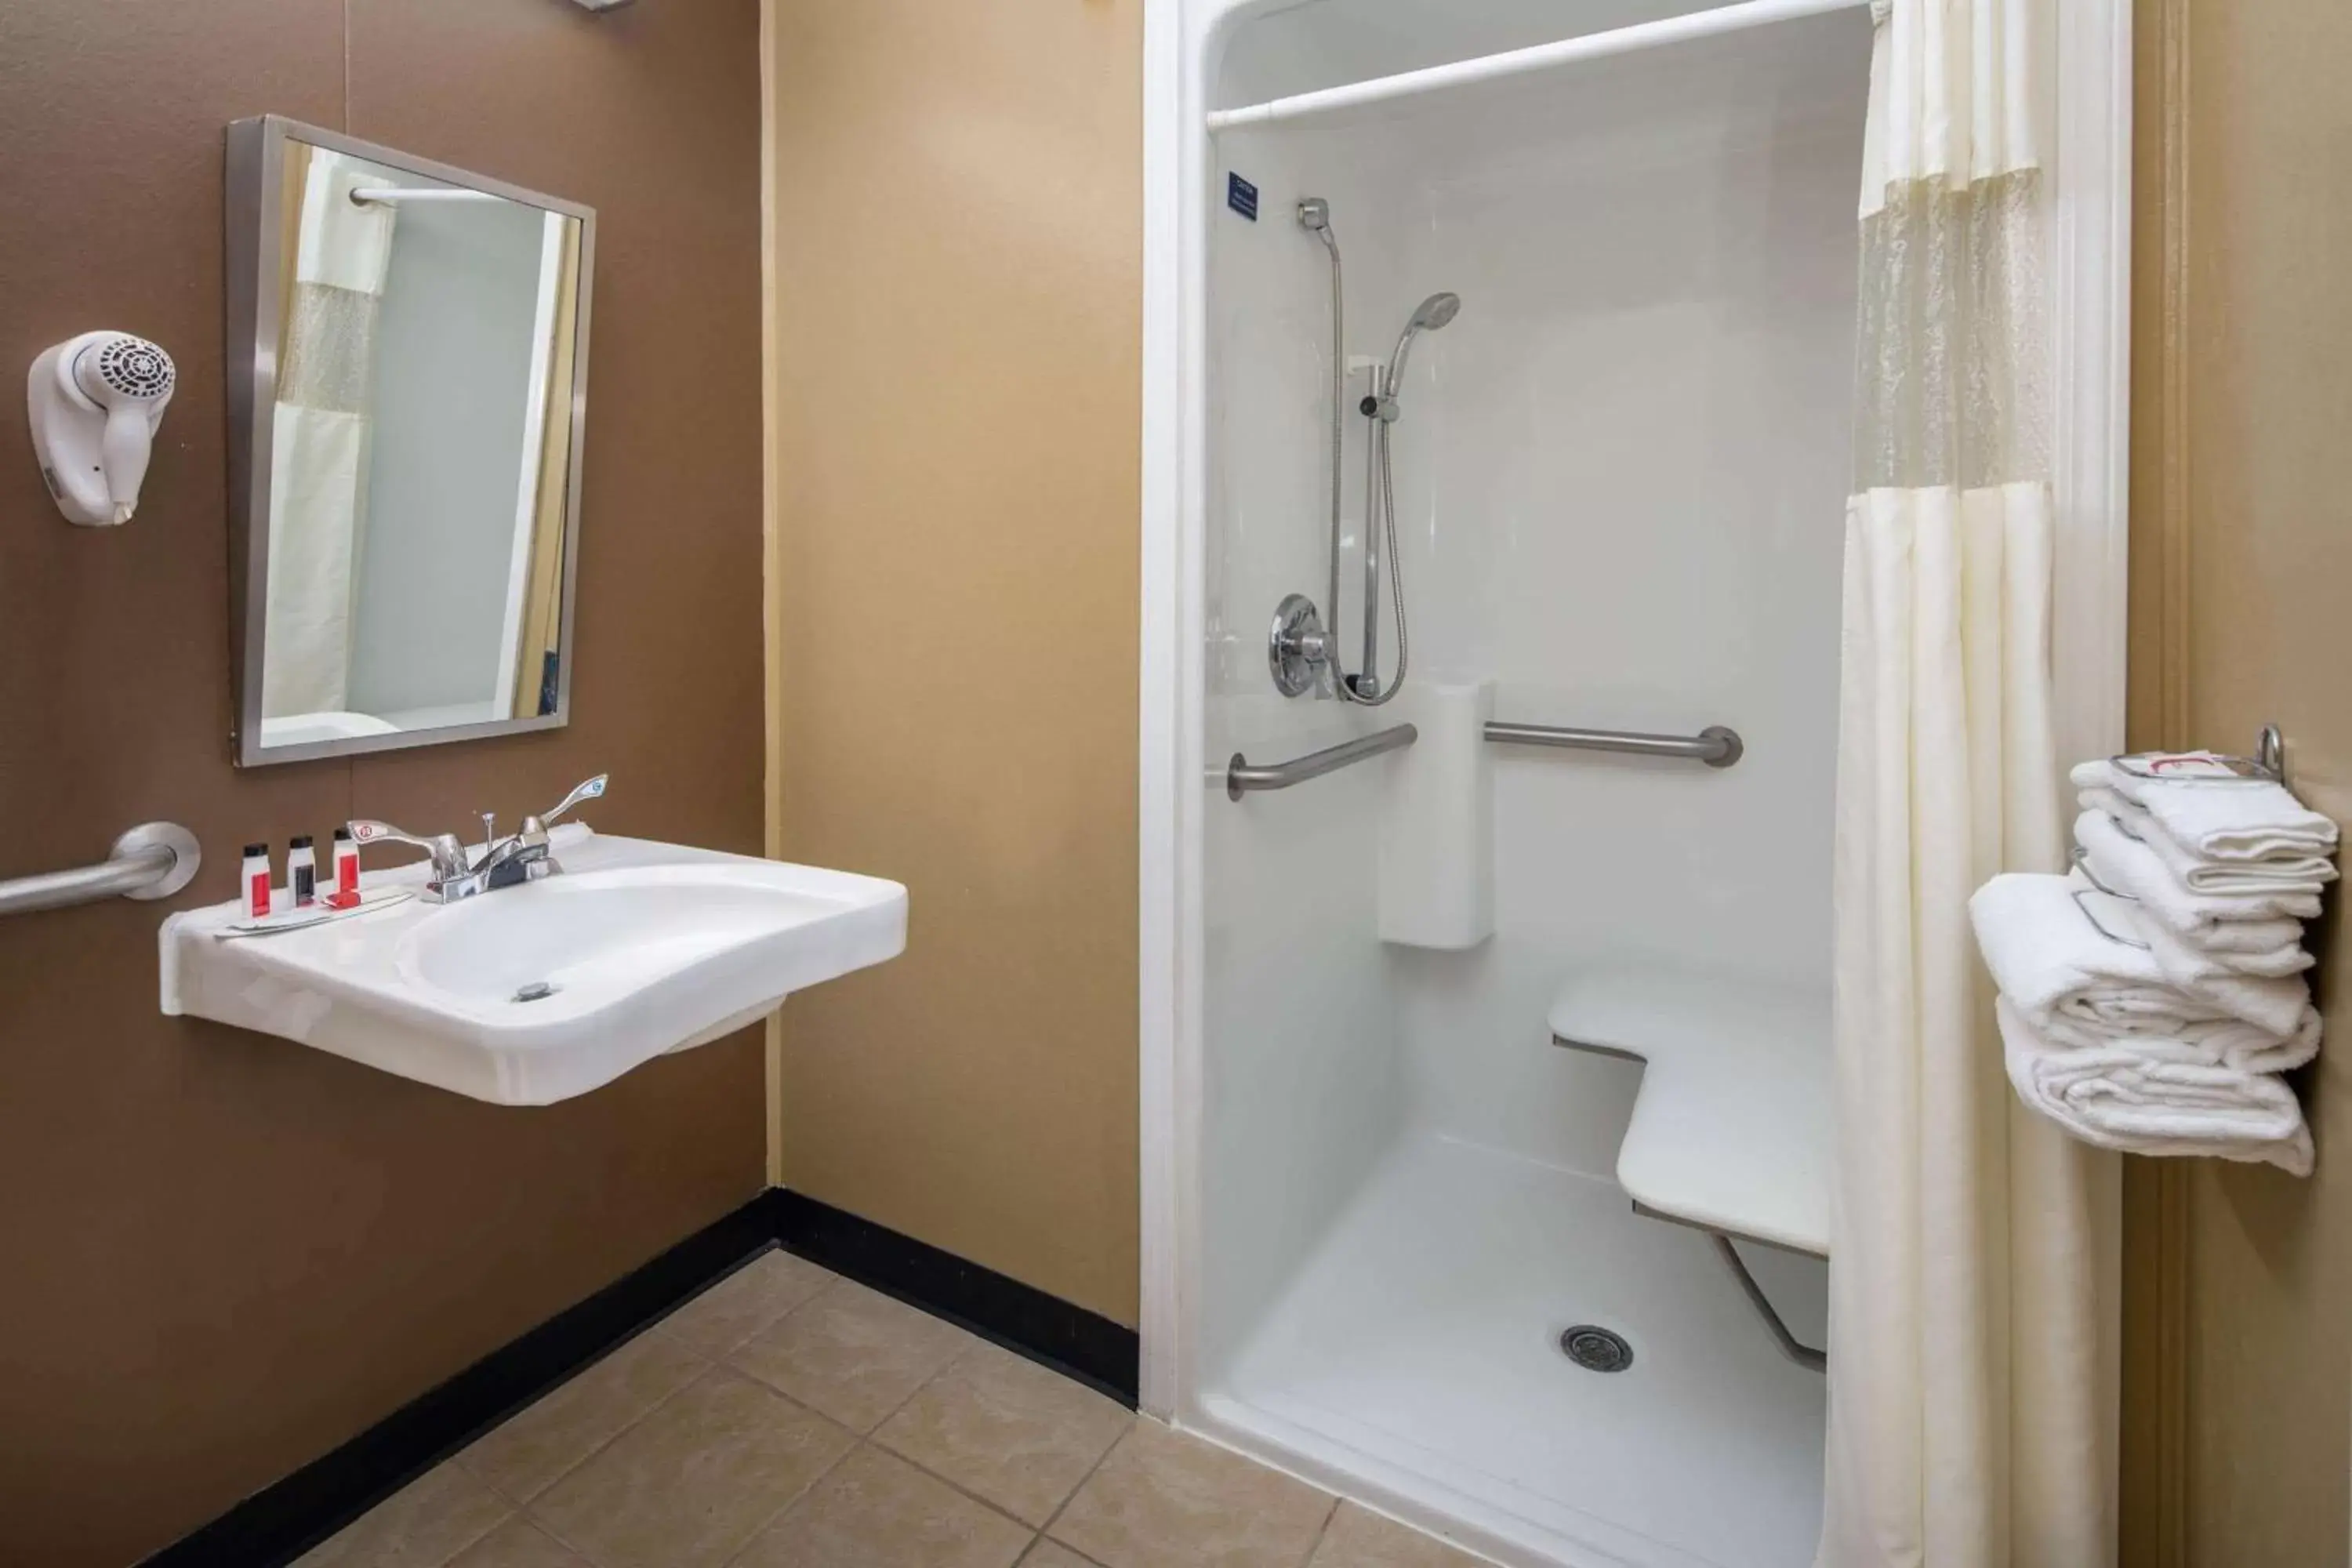 Shower, Bathroom in Microtel Inn & Suites by Wyndham Columbia Fort Jackson N